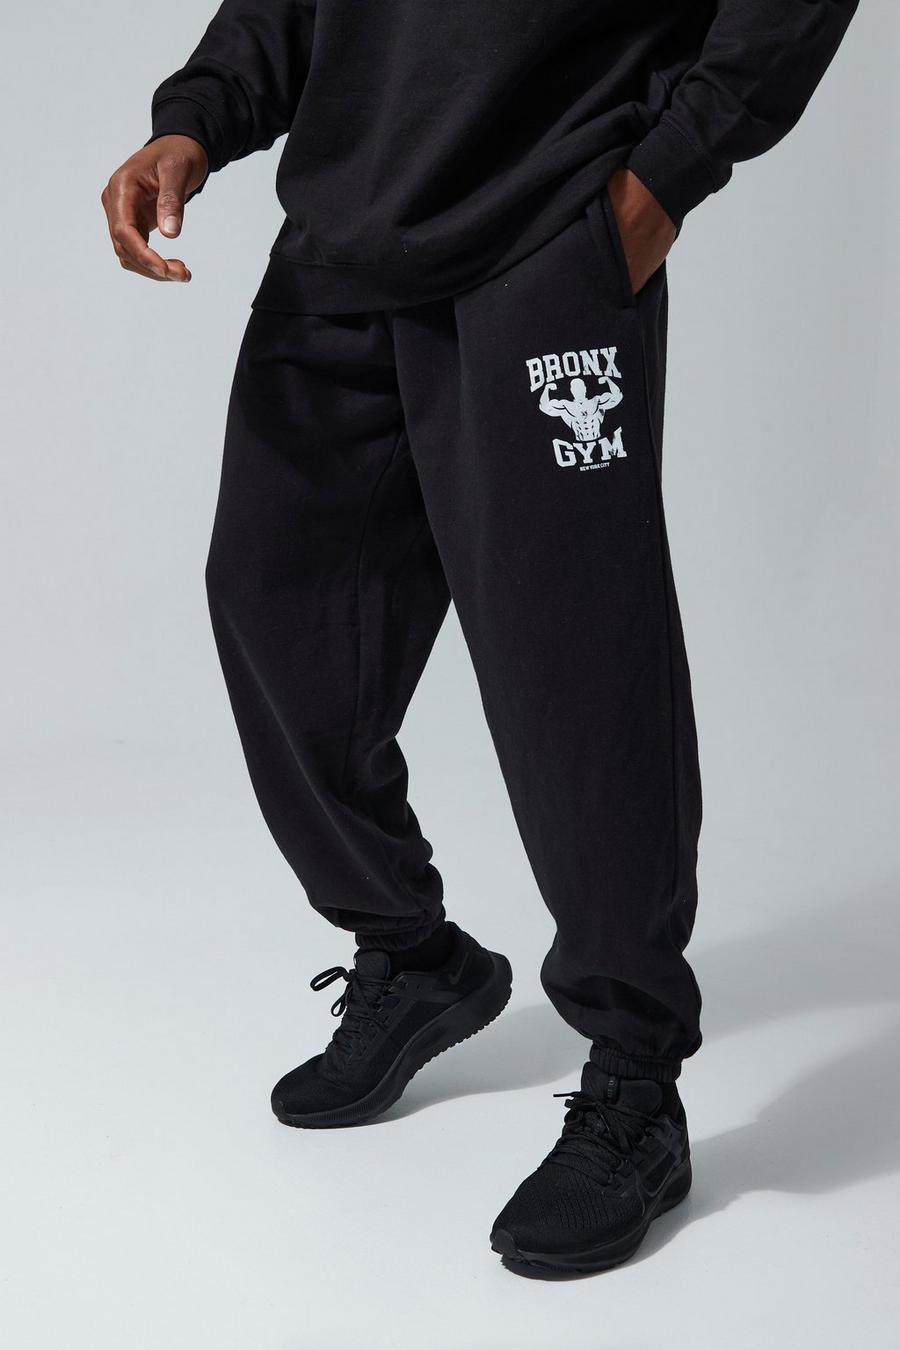 Pantalón deportivo MAN Active oversize con estampado de Bronx para el gimnasio, Black nero